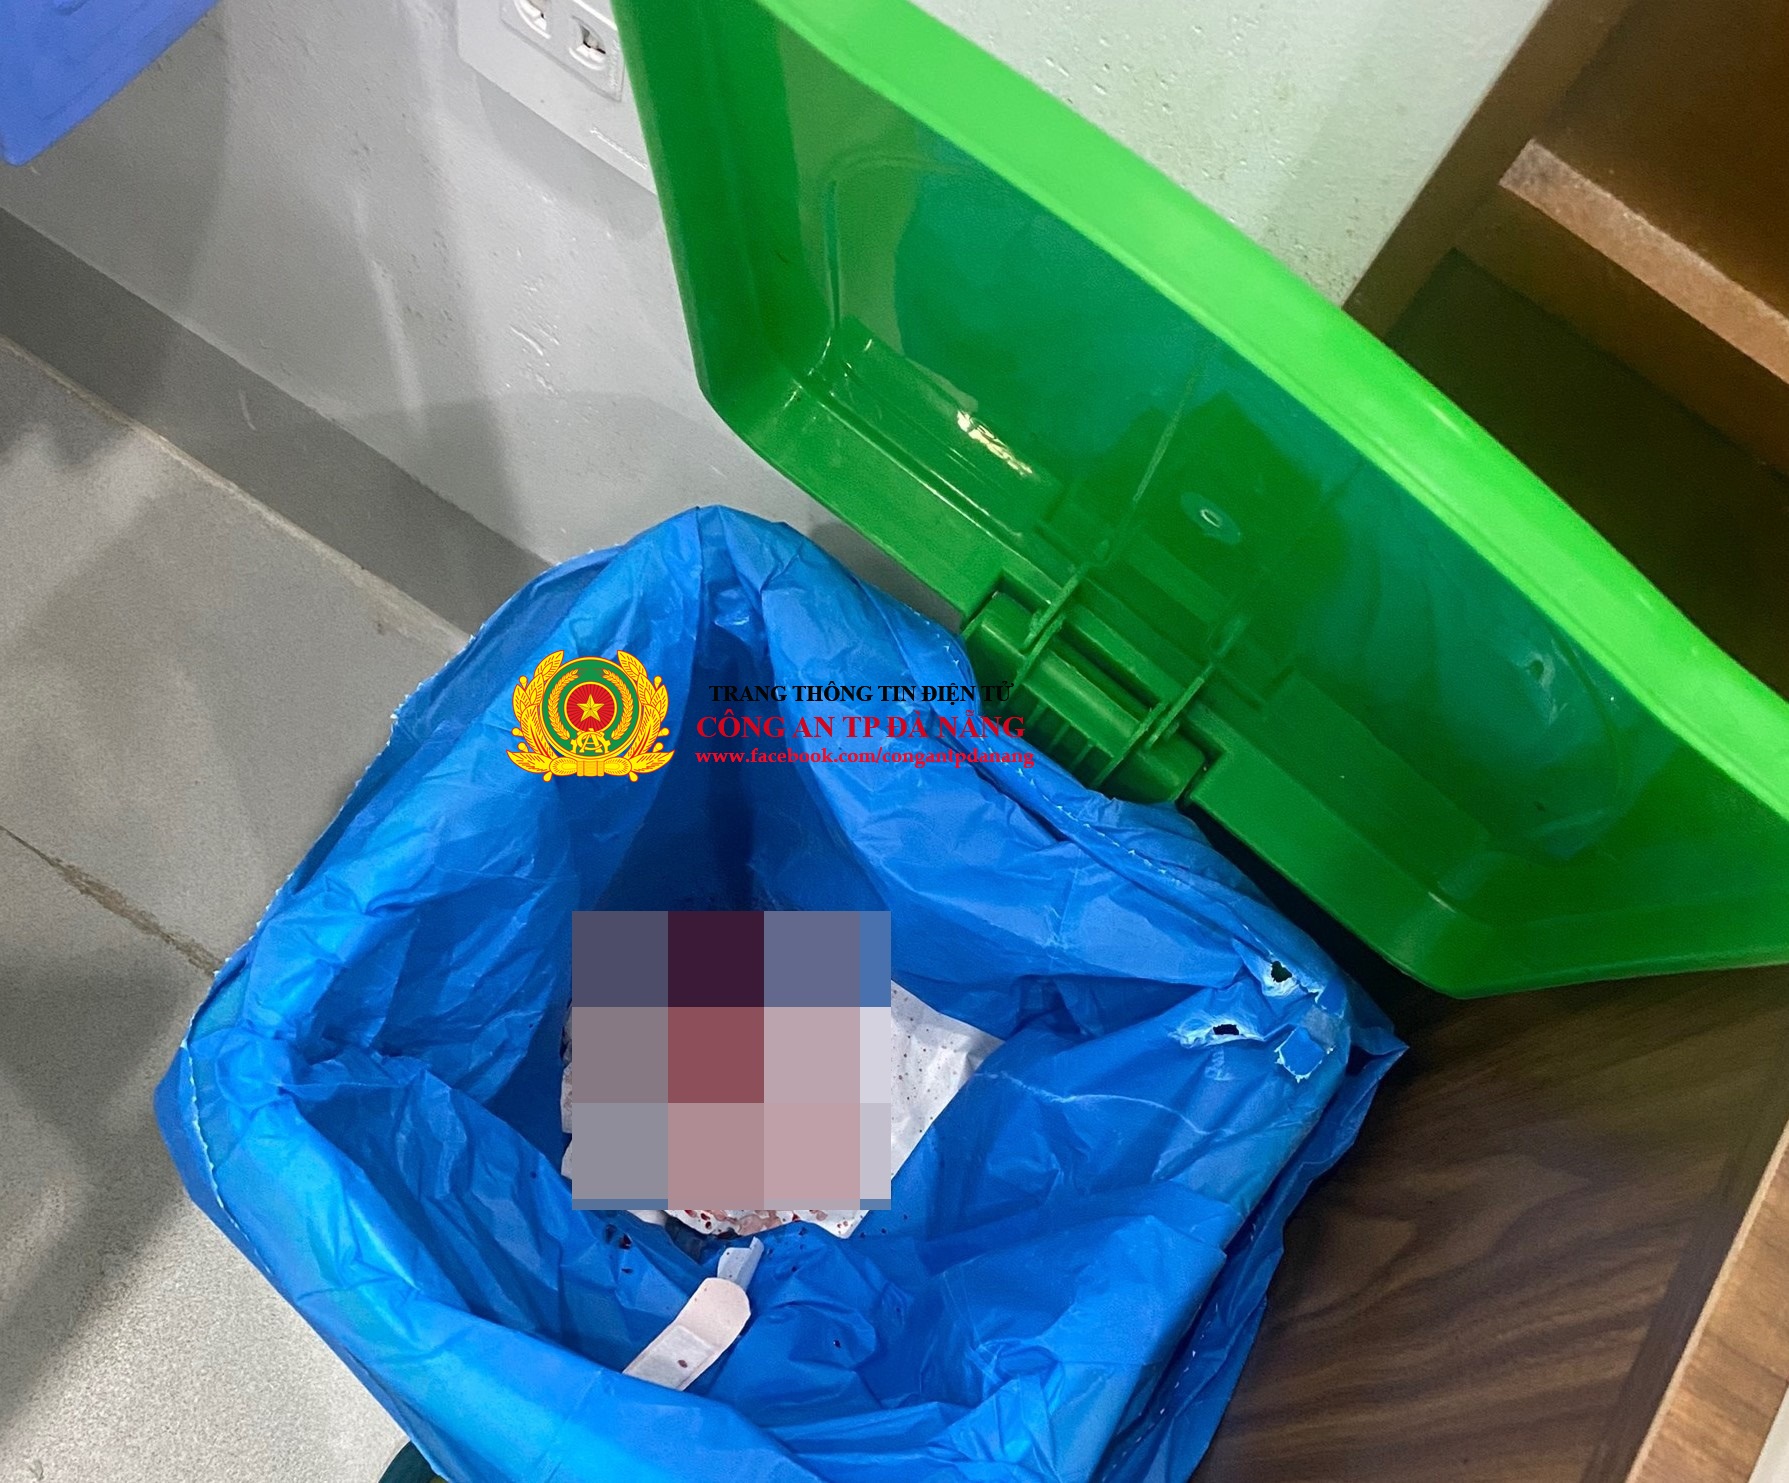 Cơ sở thẩm mỹ quốc tế Doctor Đà Nẵng không tiến hành phân loại rác thải nguy hại theo quy định.